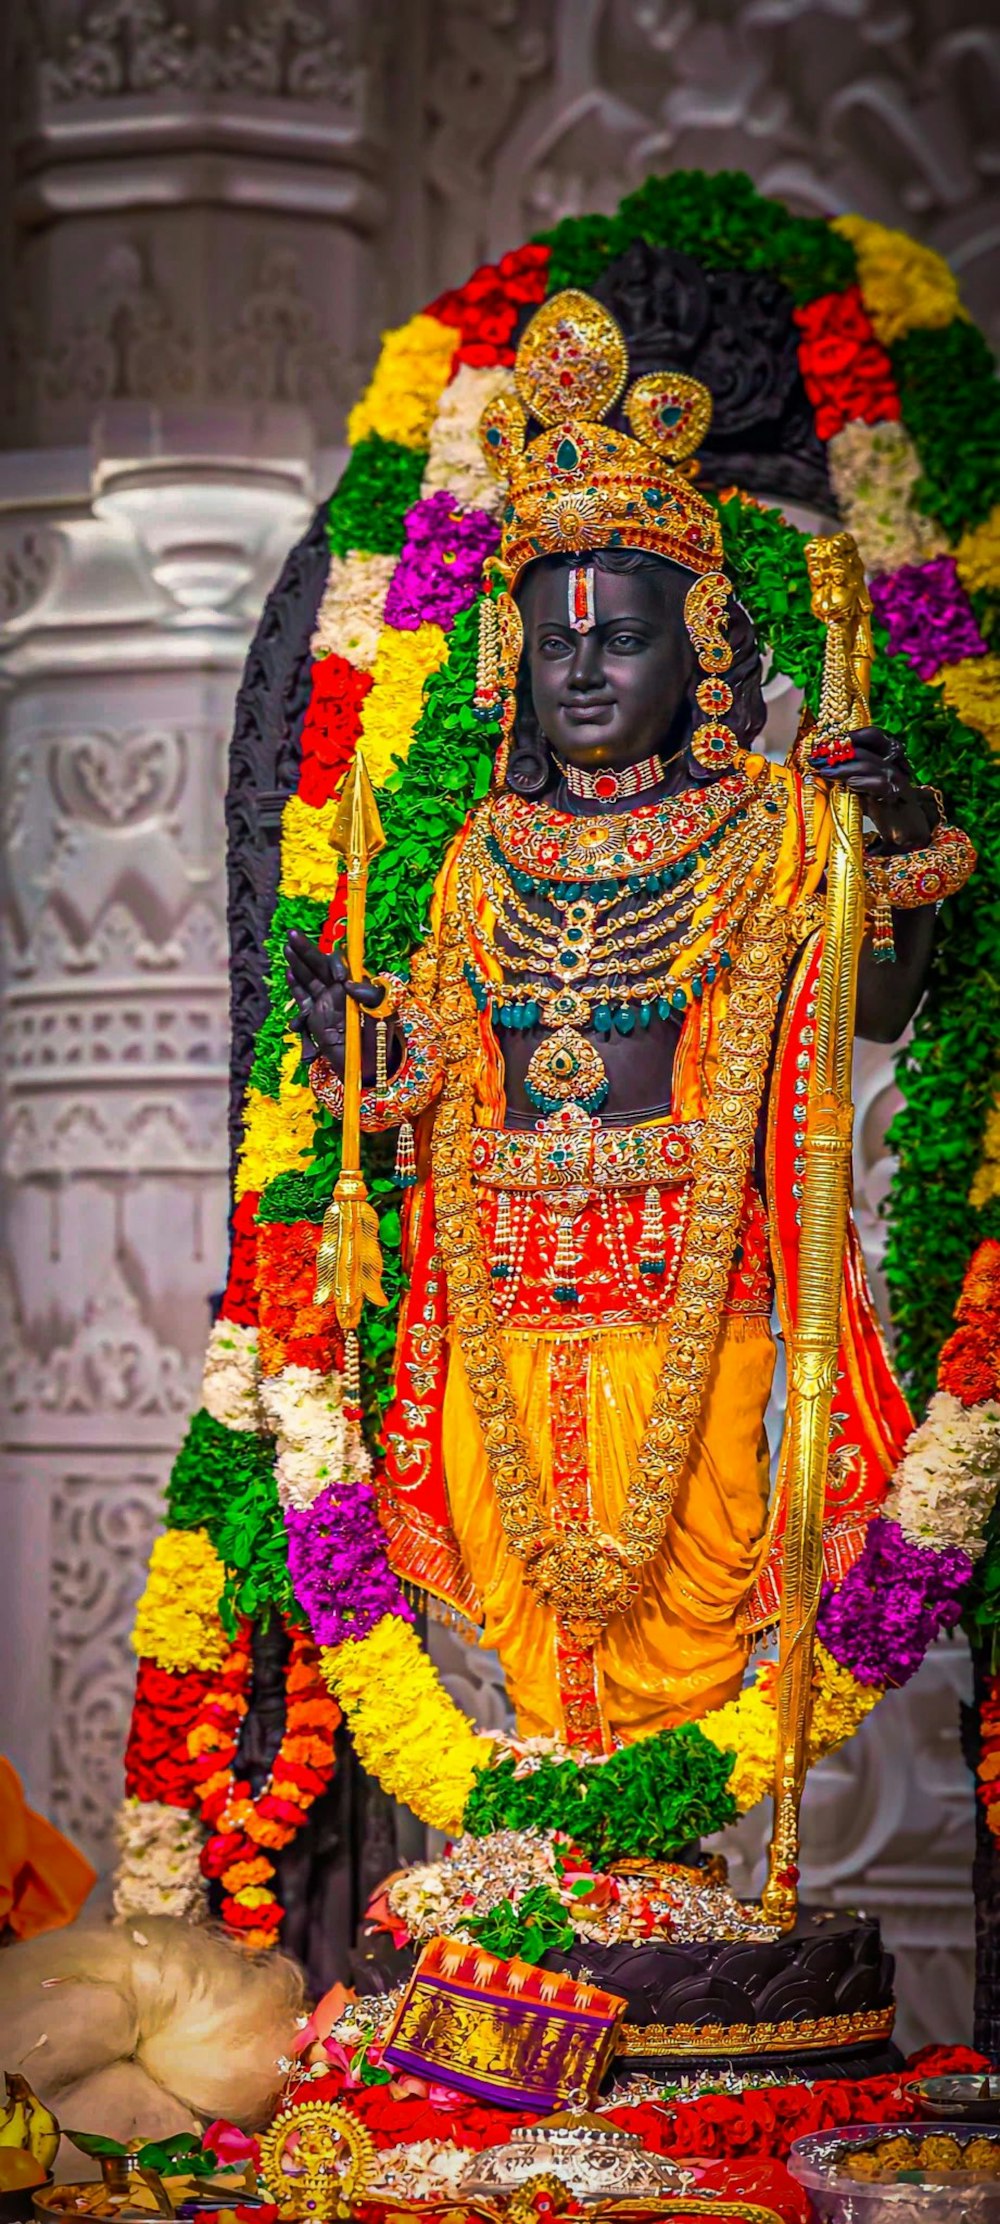 Uma estátua de um deus hindu cercada por flores